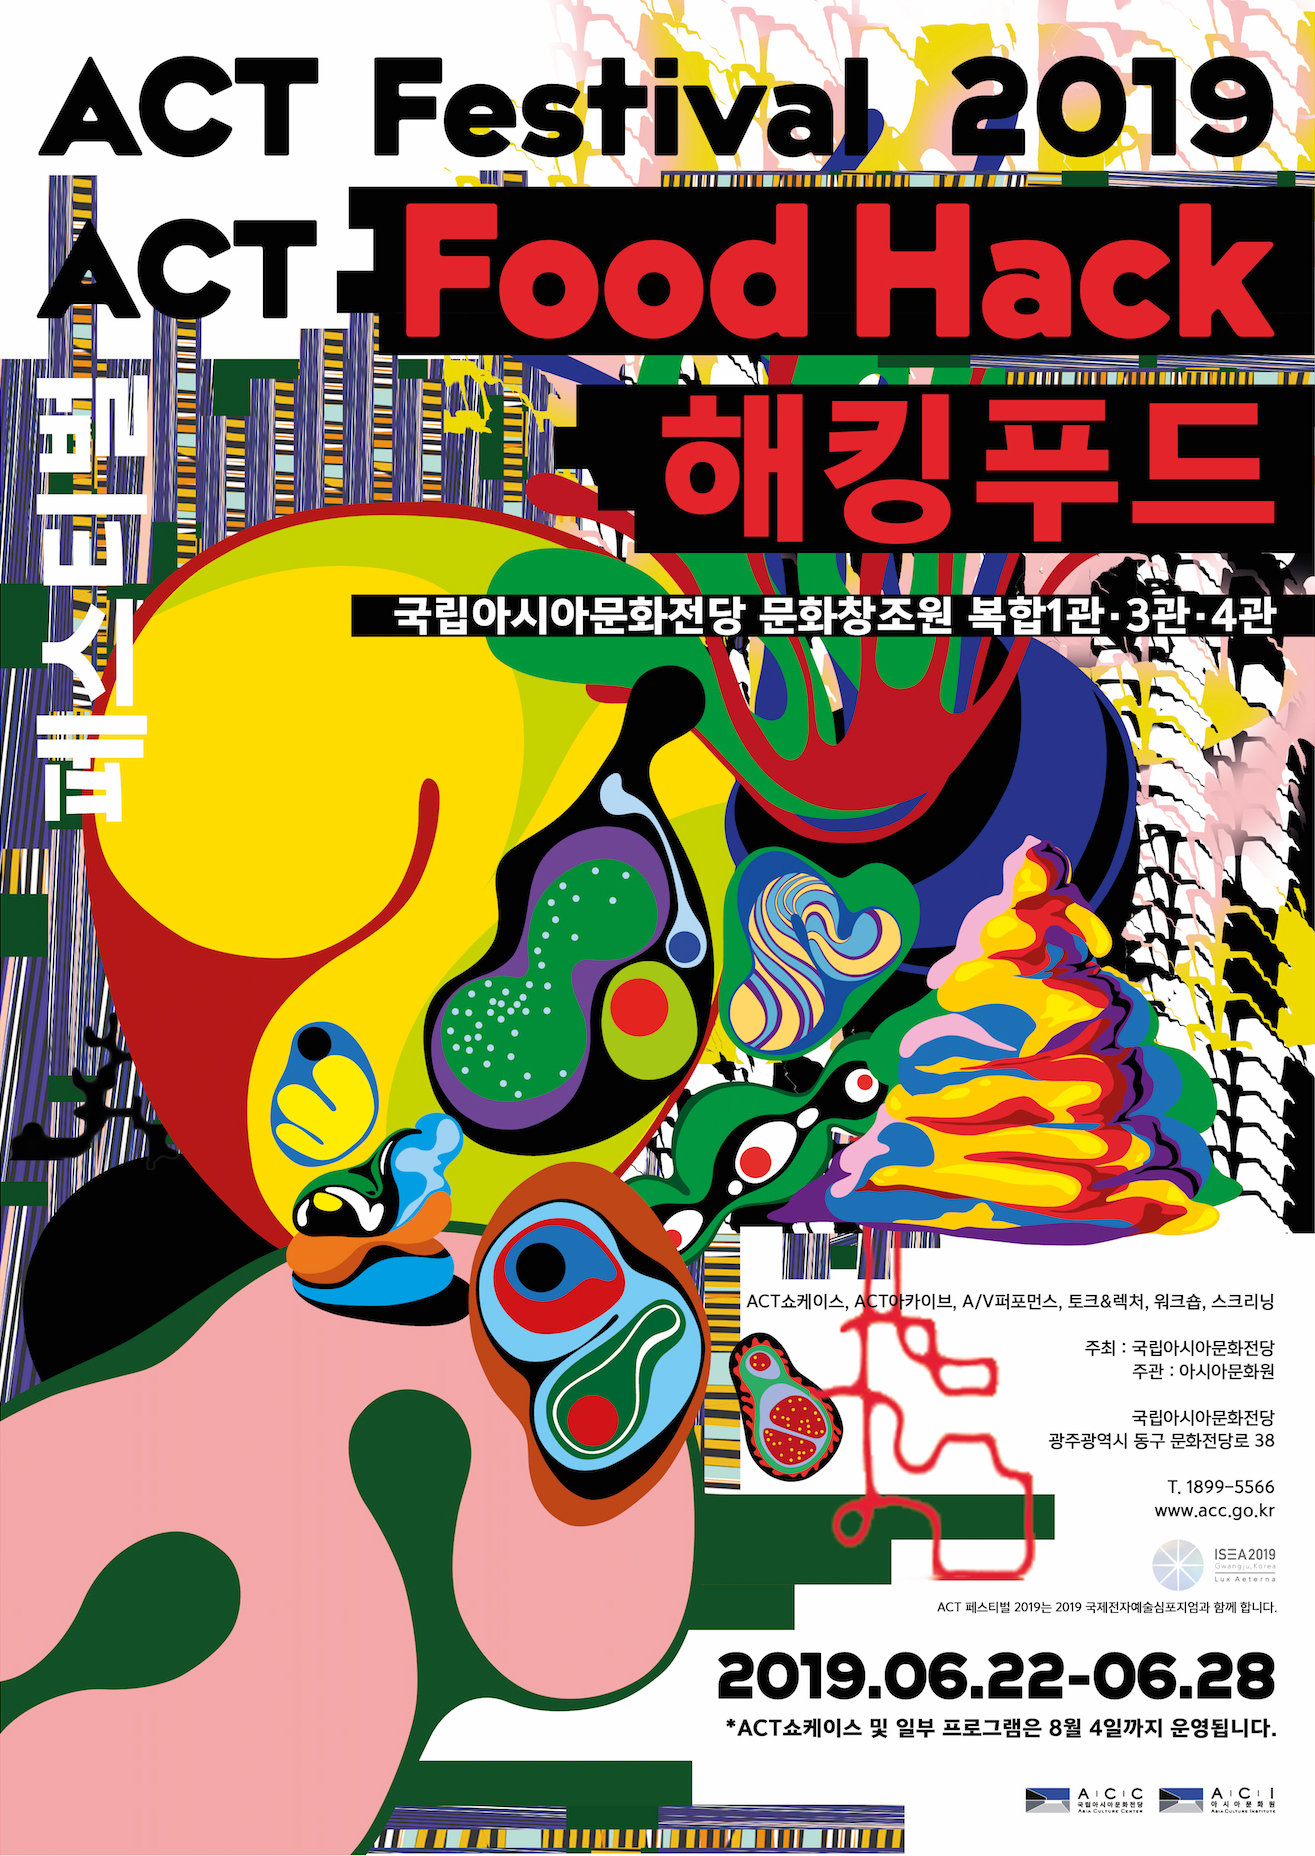 ACT Festival 2019 ACT Food Hack 해킹푸드 국립아시아문화전당 문화창조원 복합1관·3관·4관 2019.06.22-06.28 *ACT 쇼케이스 및 일부 프로그램은 8월 4일까지 운행됩니다.